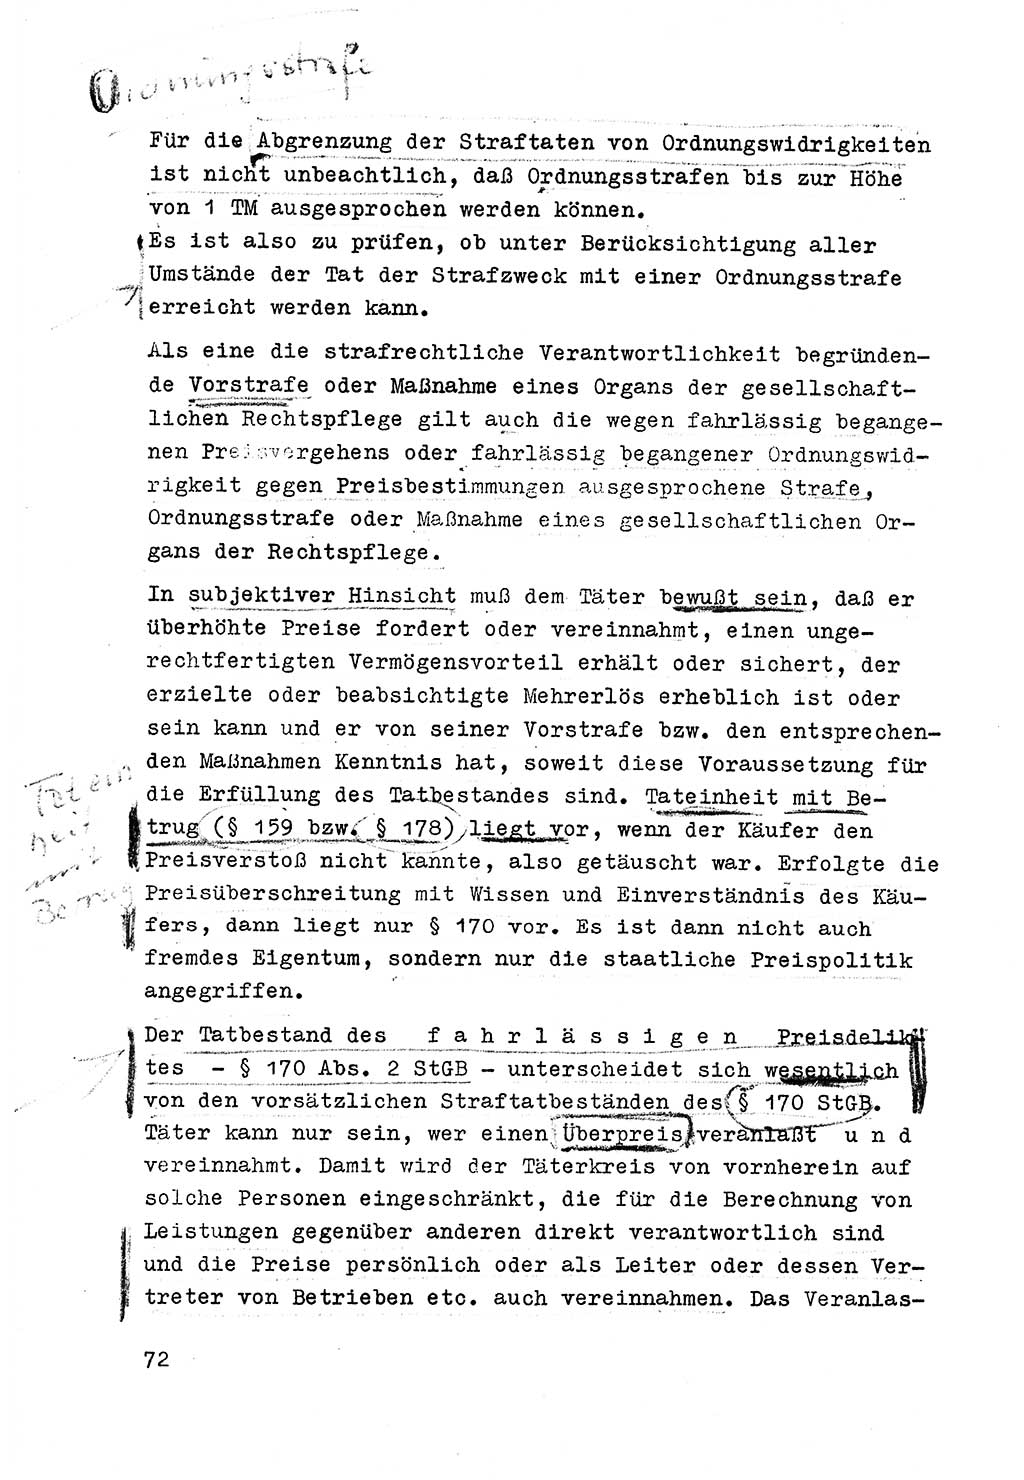 Strafrecht der DDR (Deutsche Demokratische Republik), Besonderer Teil, Lehrmaterial, Heft 6 1970, Seite 72 (Strafr. DDR BT Lehrmat. H. 6 1970, S. 72)